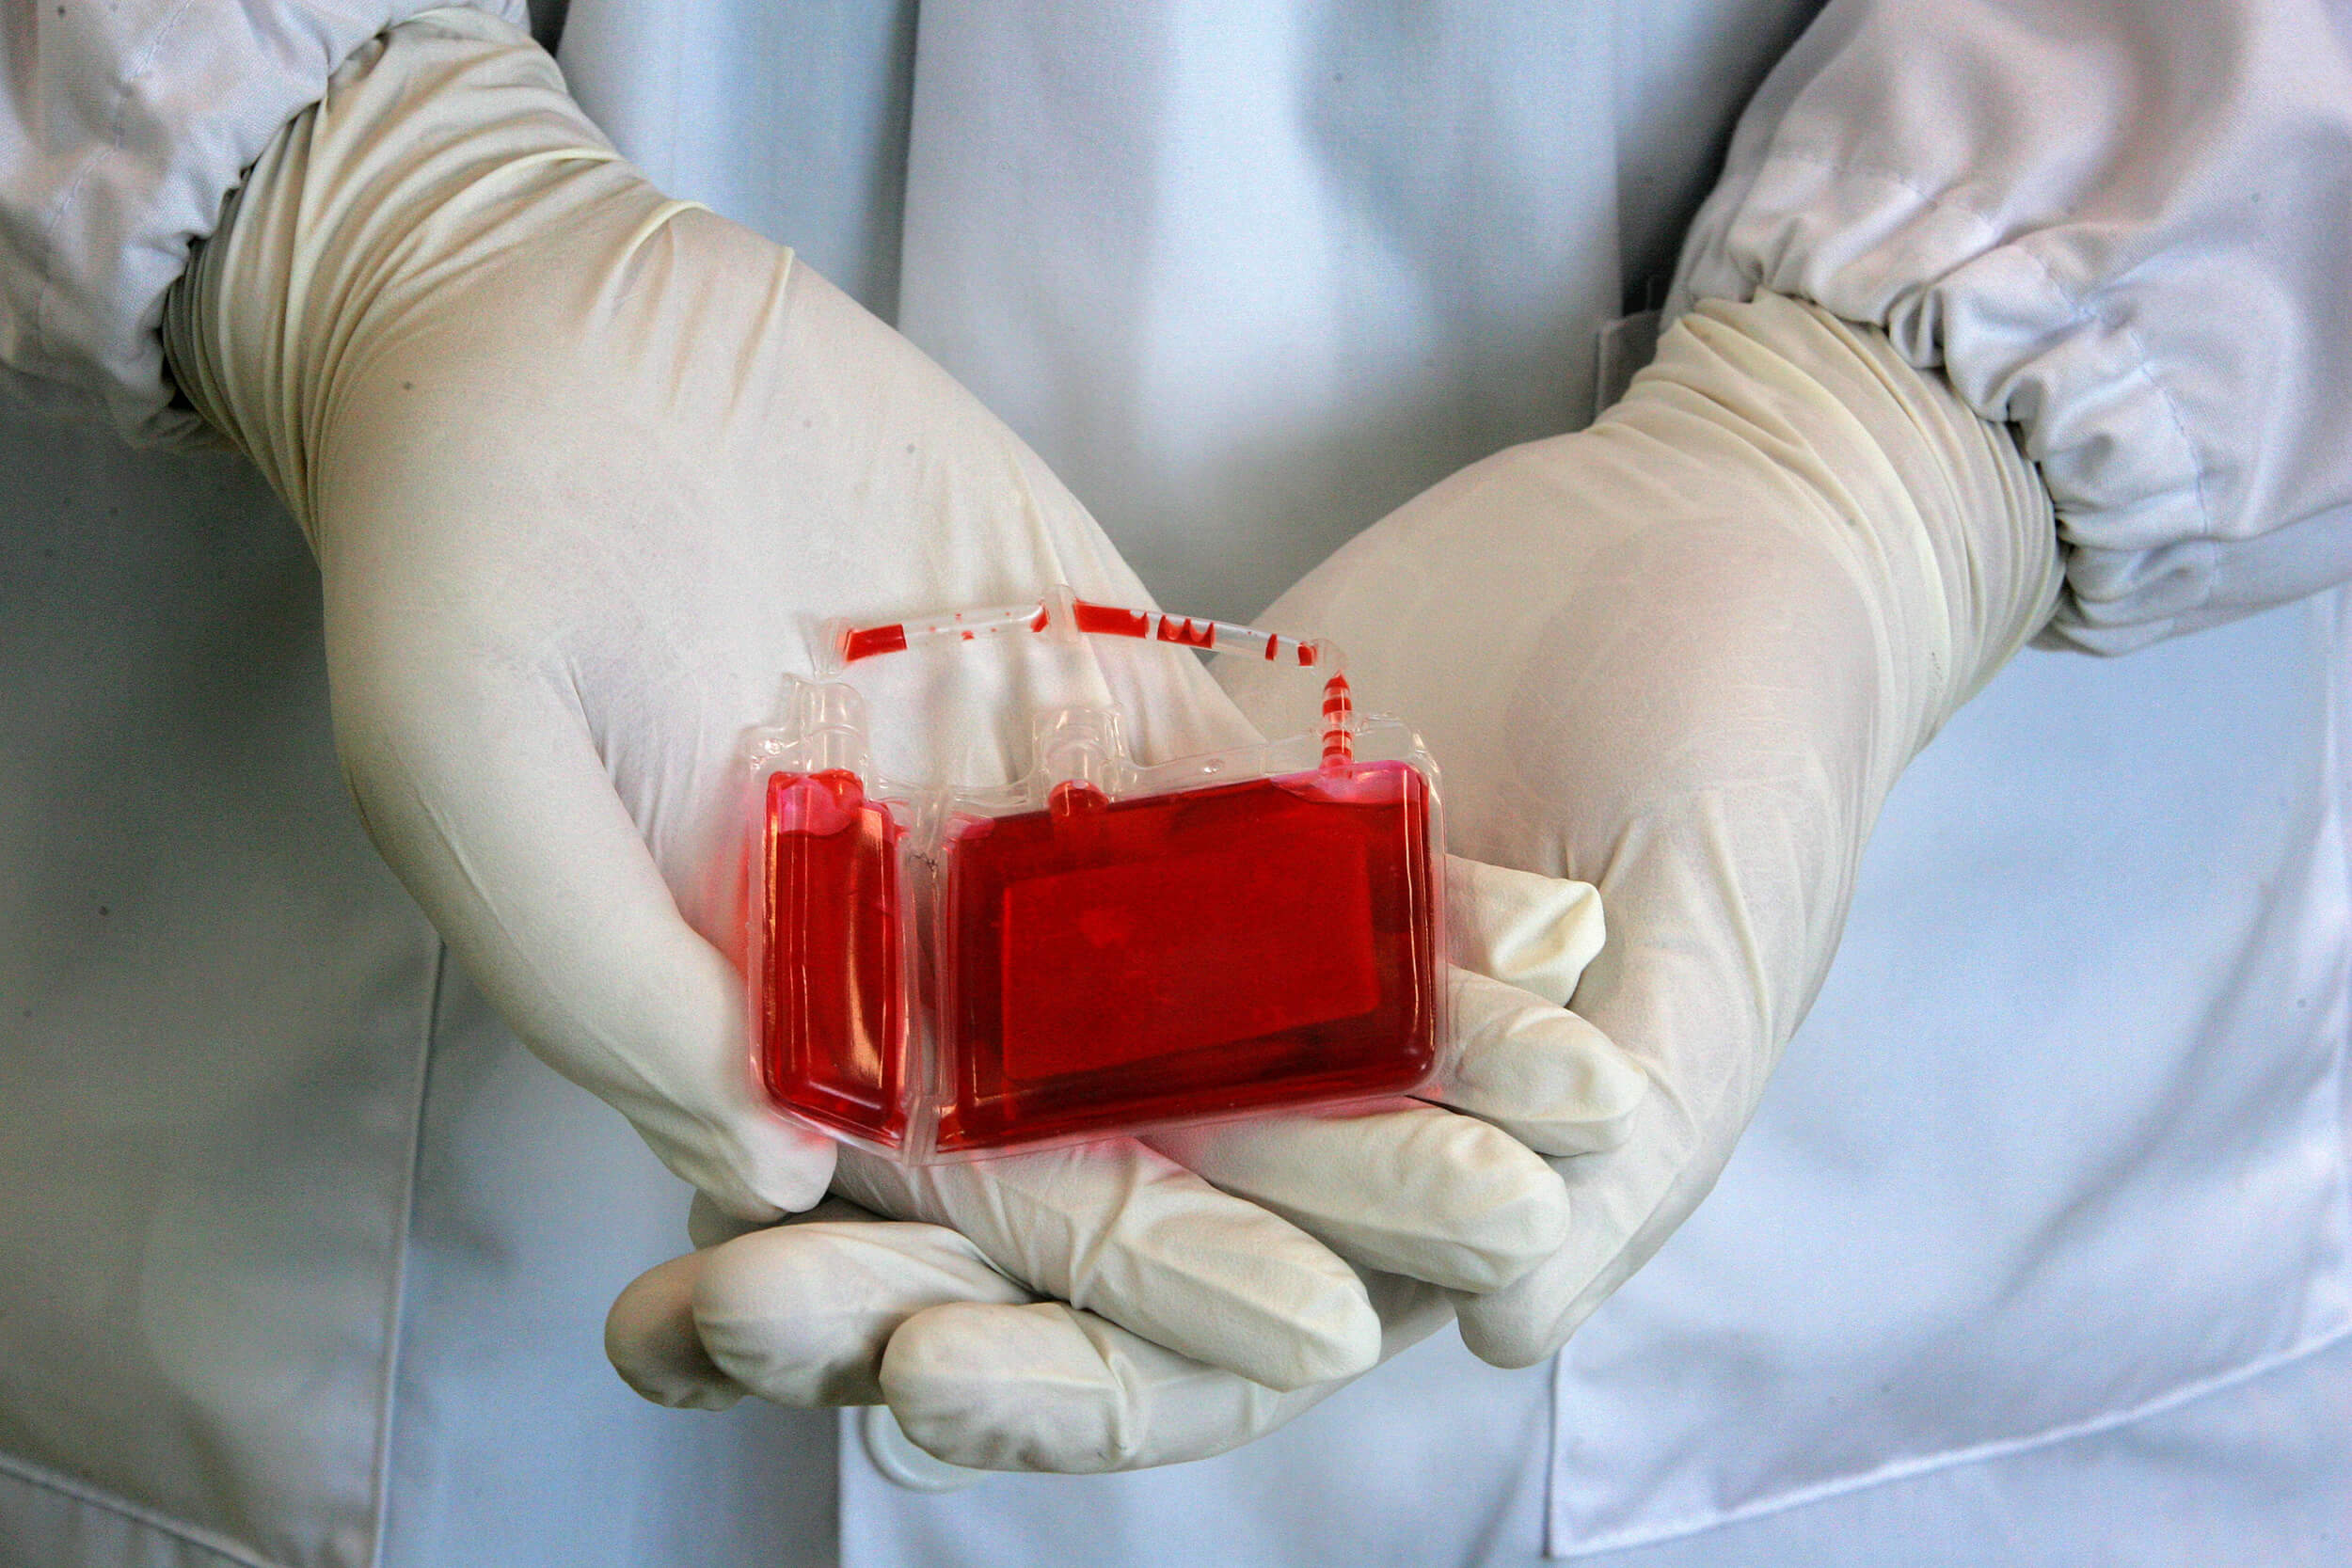 بنك دم للحبل السري ! بوسعك إنقاذ حياة ملايين البشر !